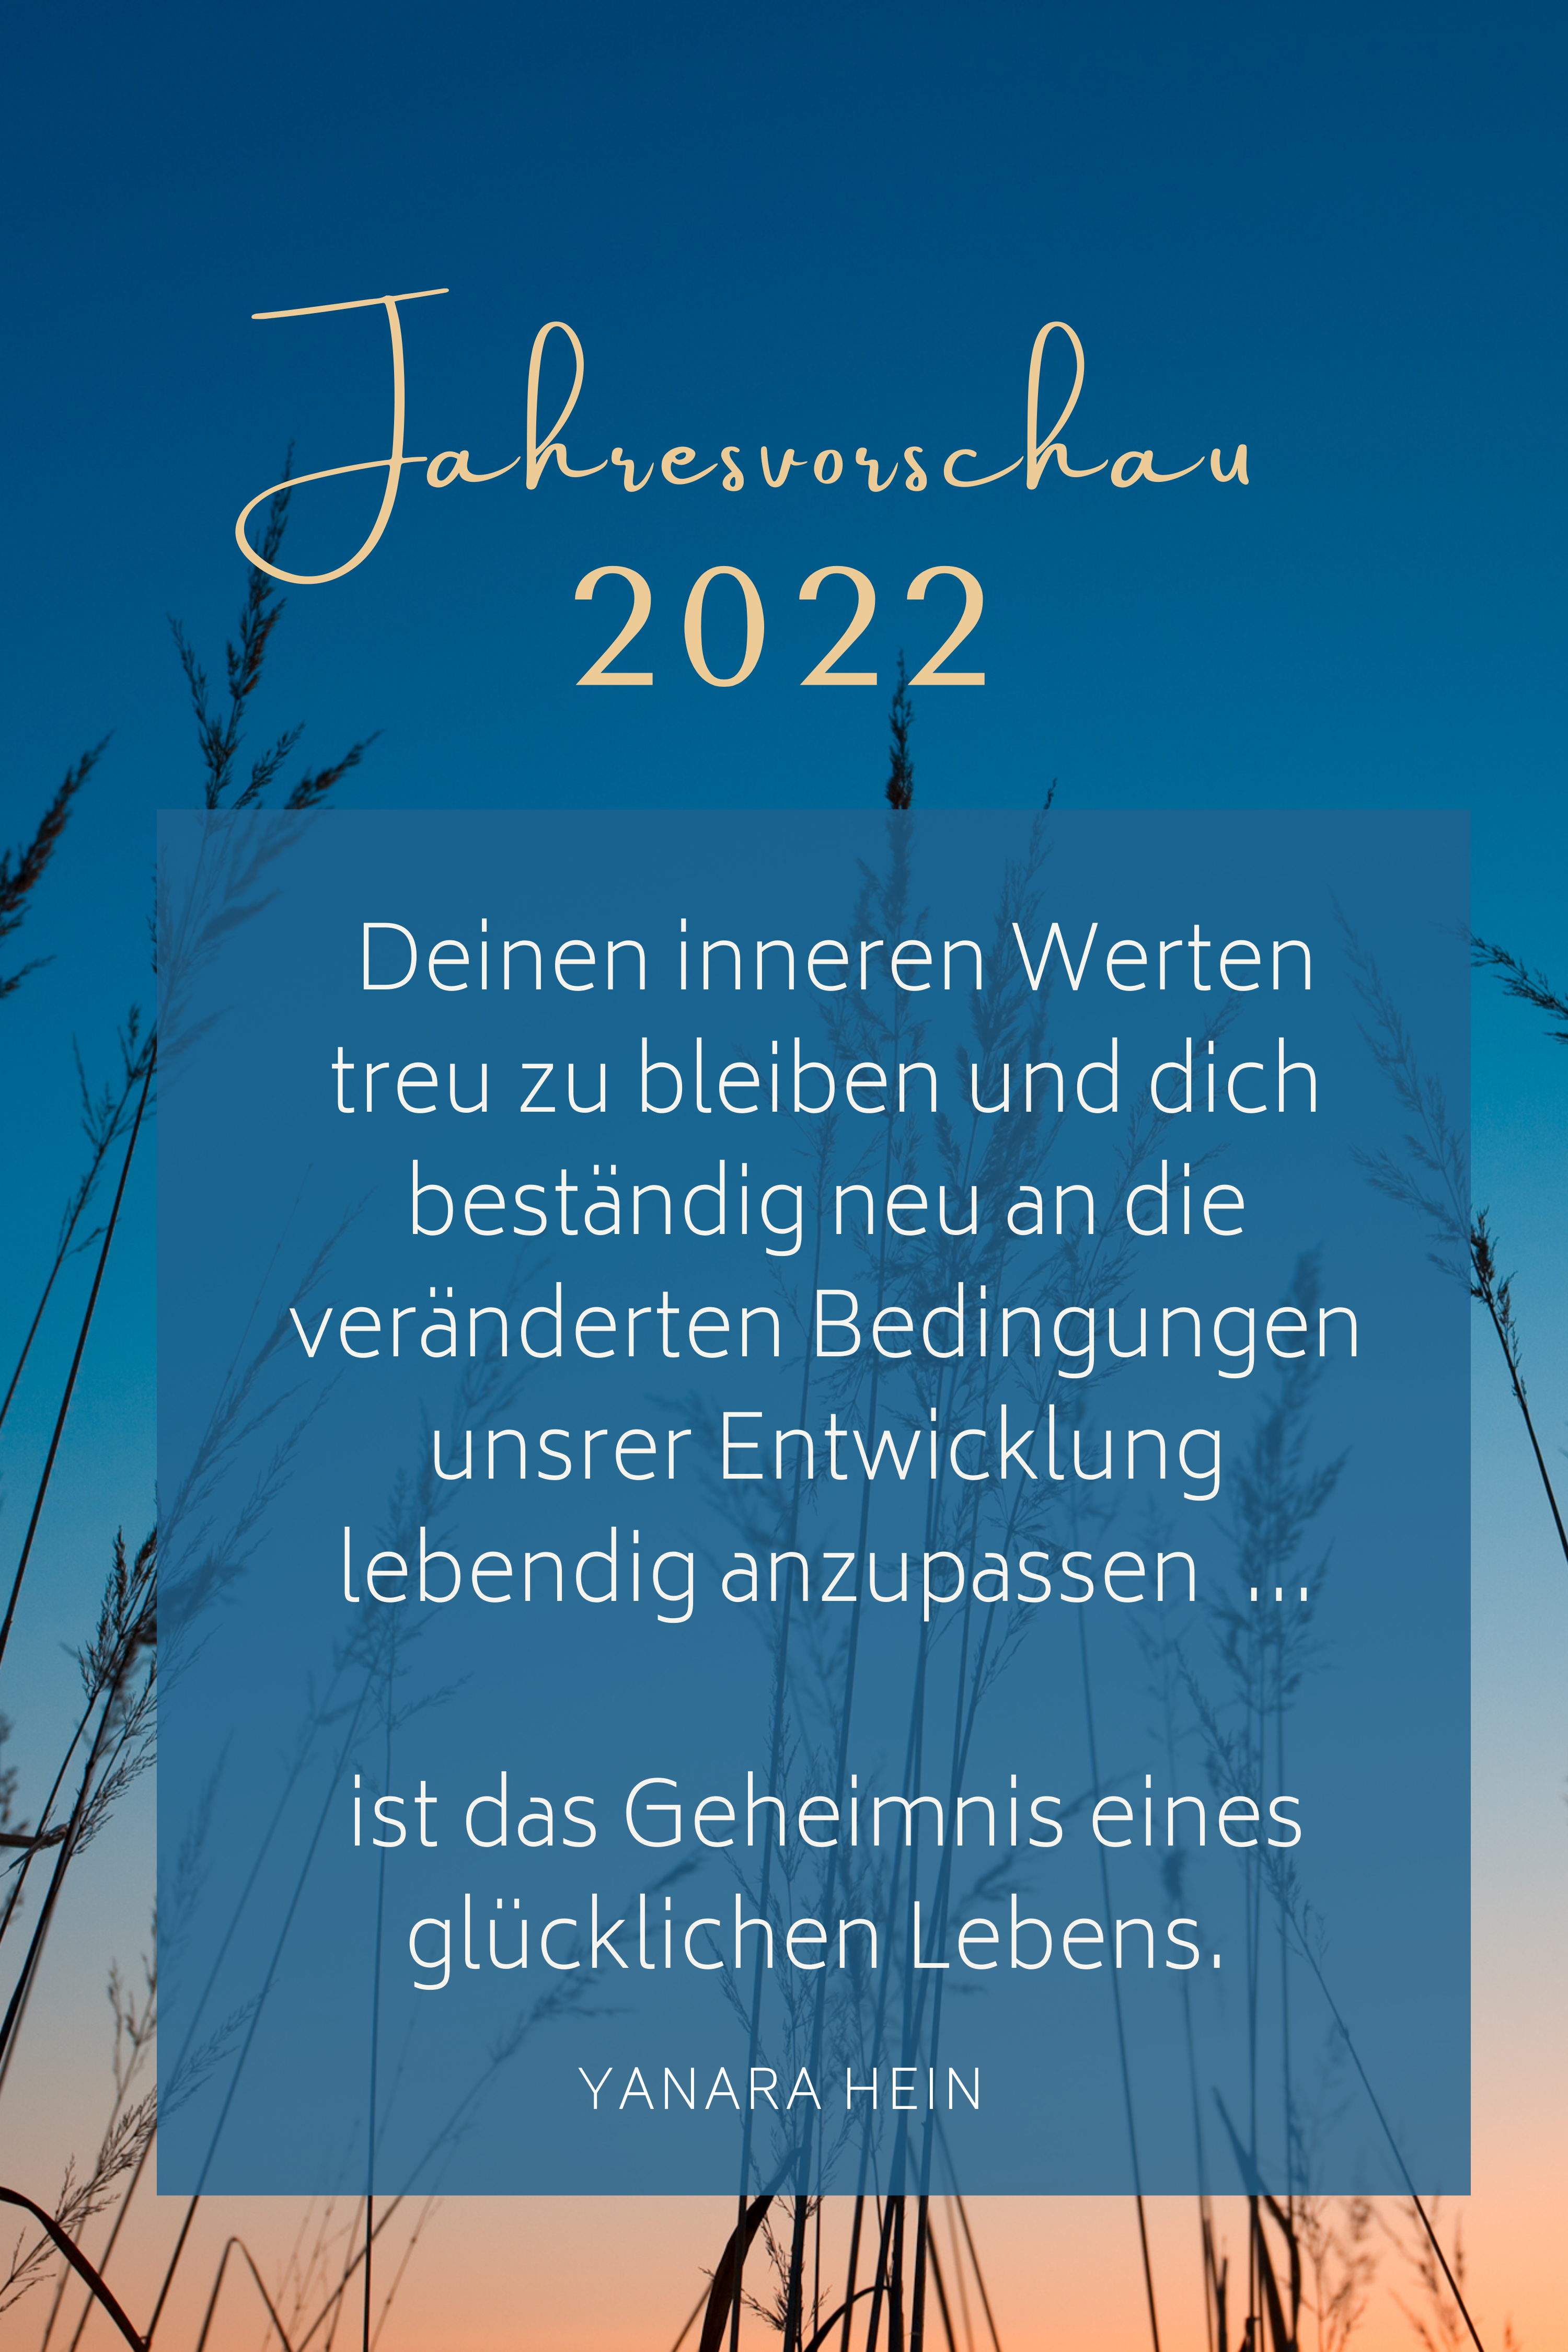  Jahresvorschau 2022 #zitate #weisheiten #quotes #zeitqualität #seelenbotschaft #transformation #bewusstseinssprung #veränderung #spiritualität